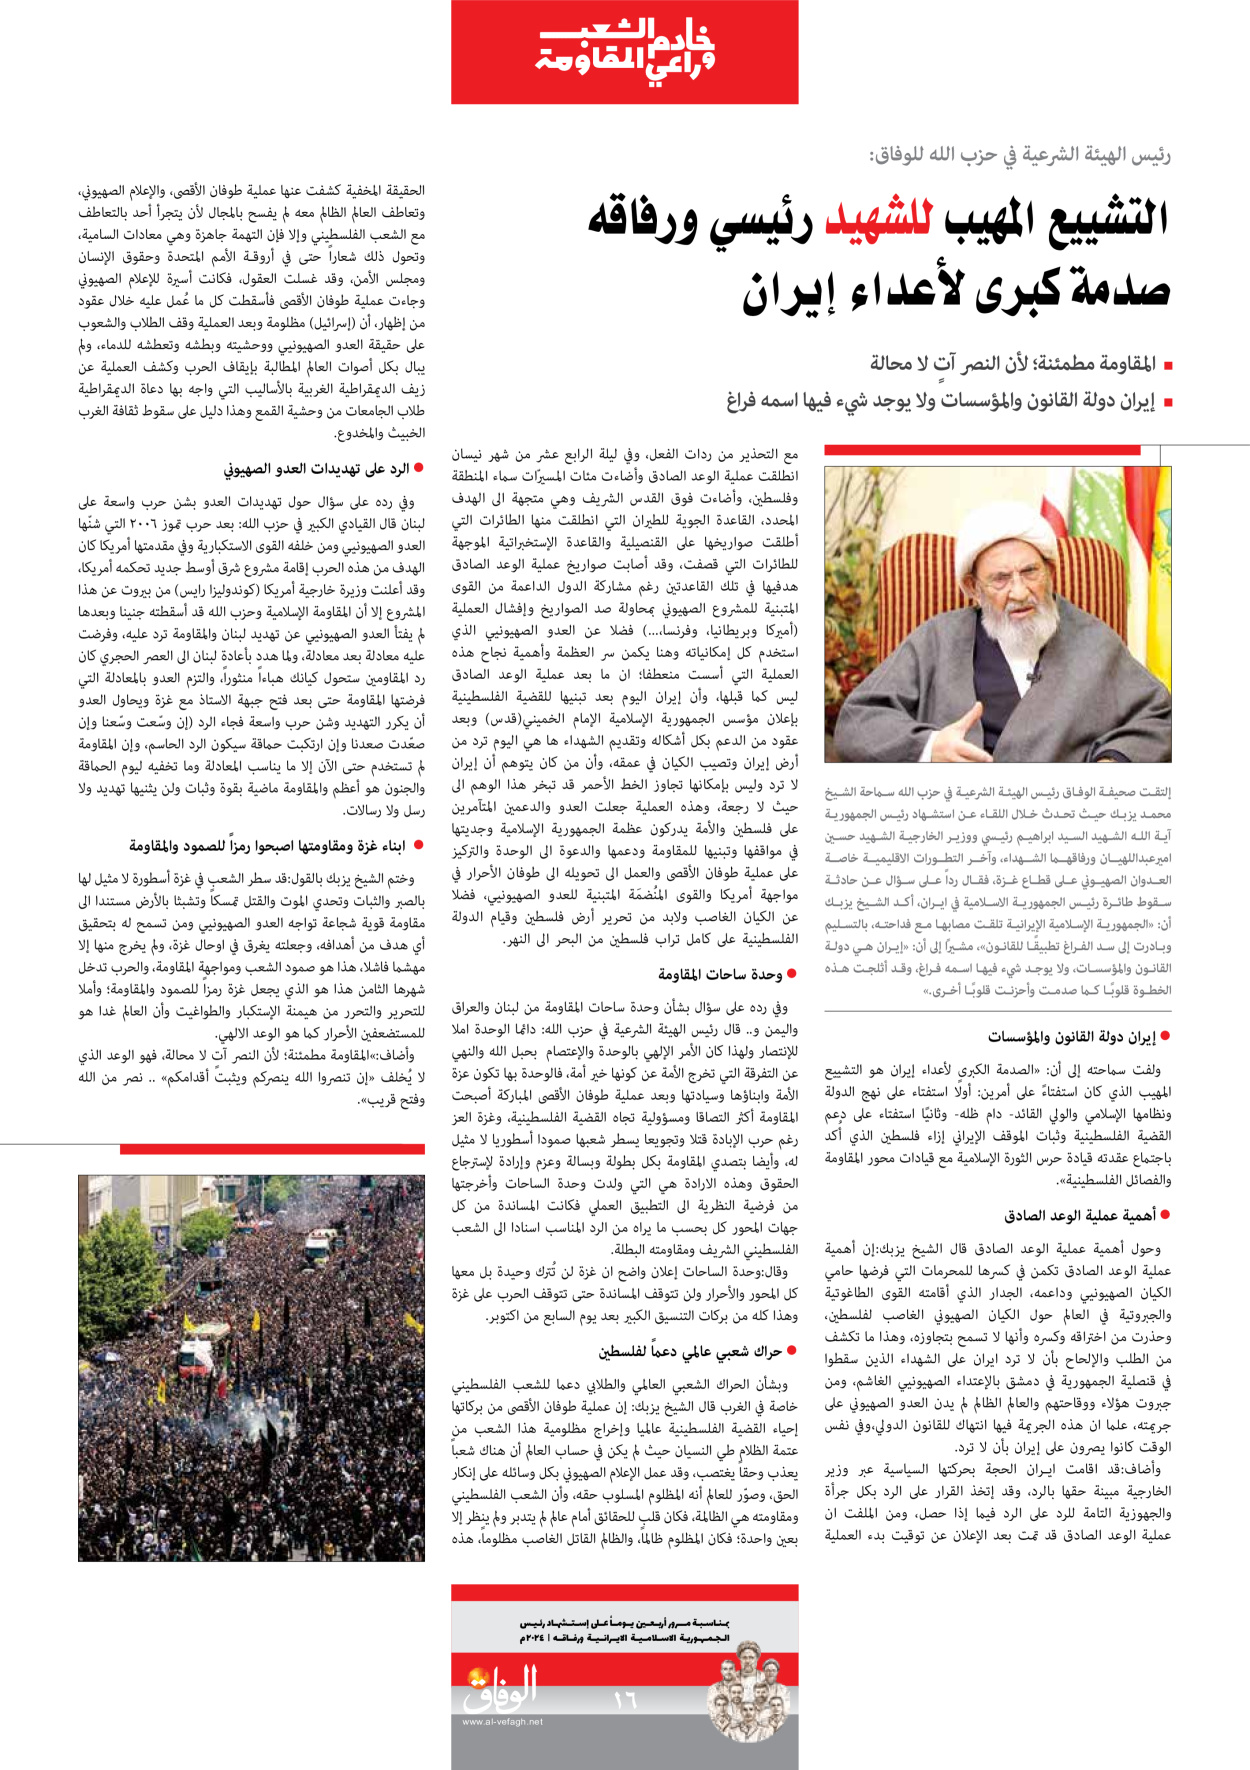 صحیفة ایران الدولیة الوفاق - ملحق ویژه نامه چهلم شهید رییسی - ٢٩ يونيو ٢٠٢٤ - الصفحة ۱٦